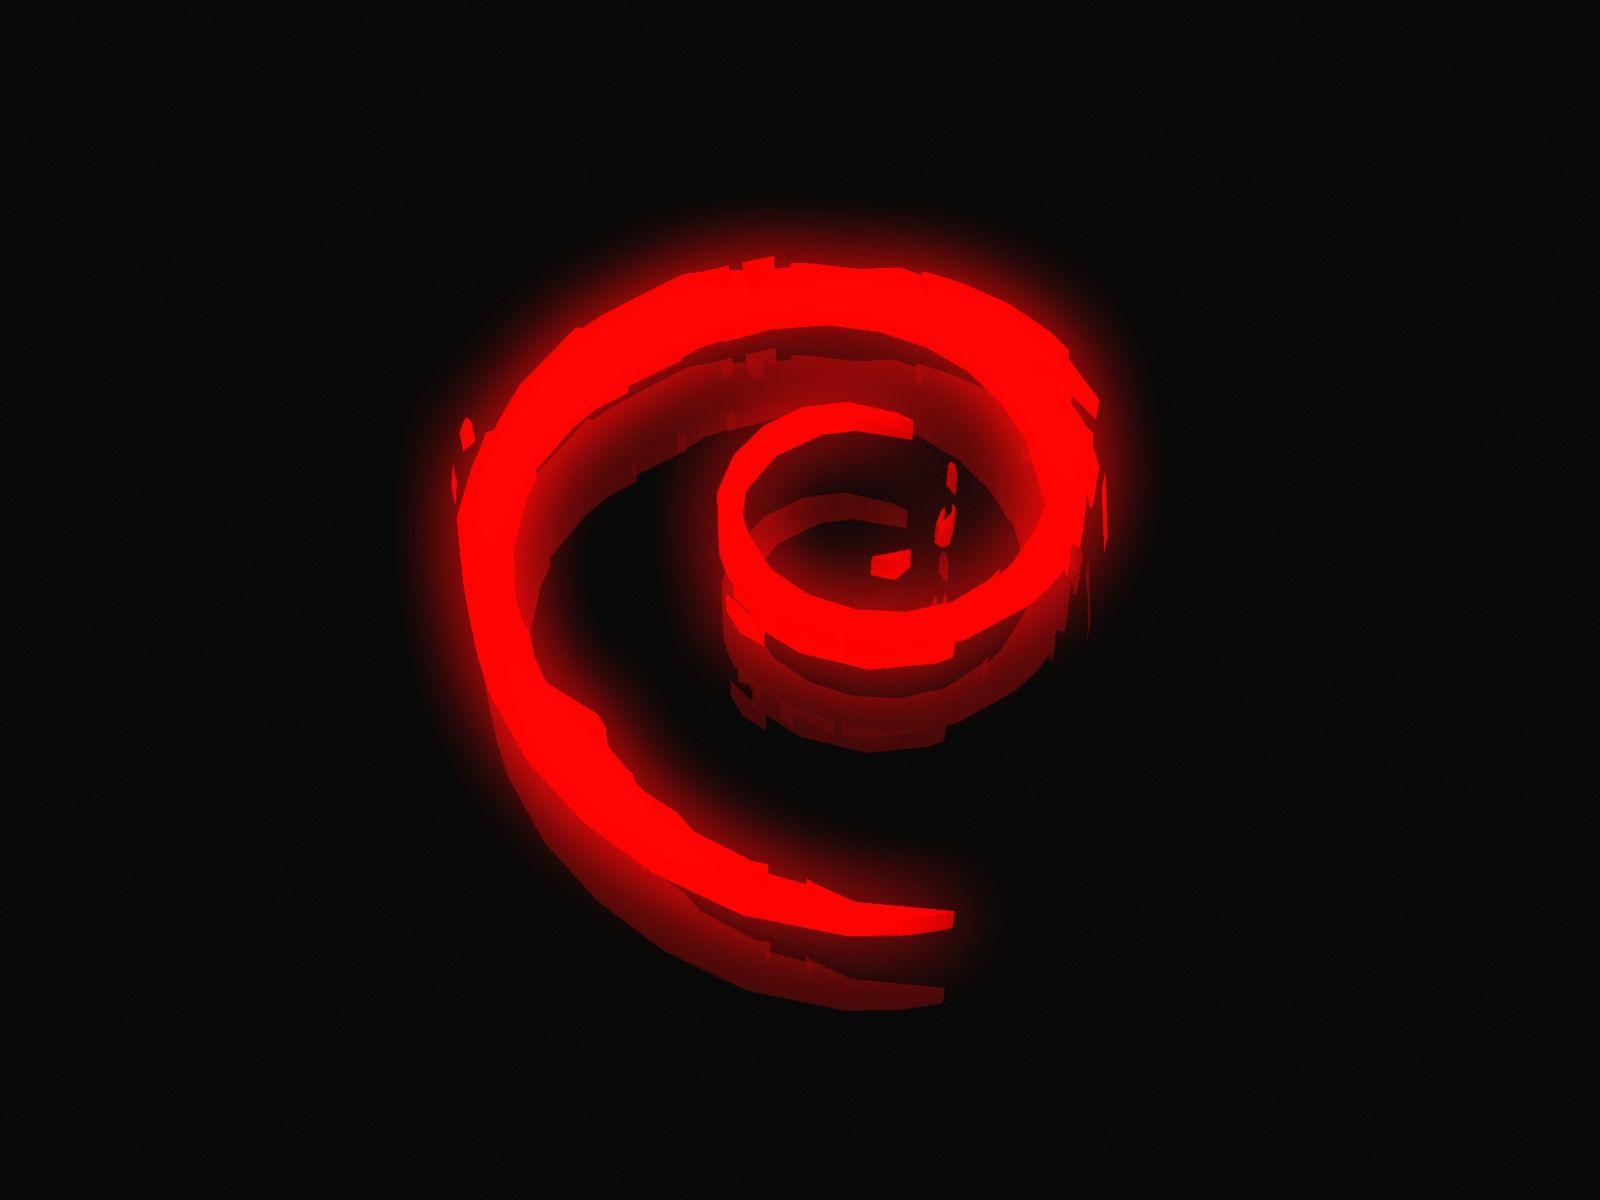 DEBIAN red neon logo 01 by x